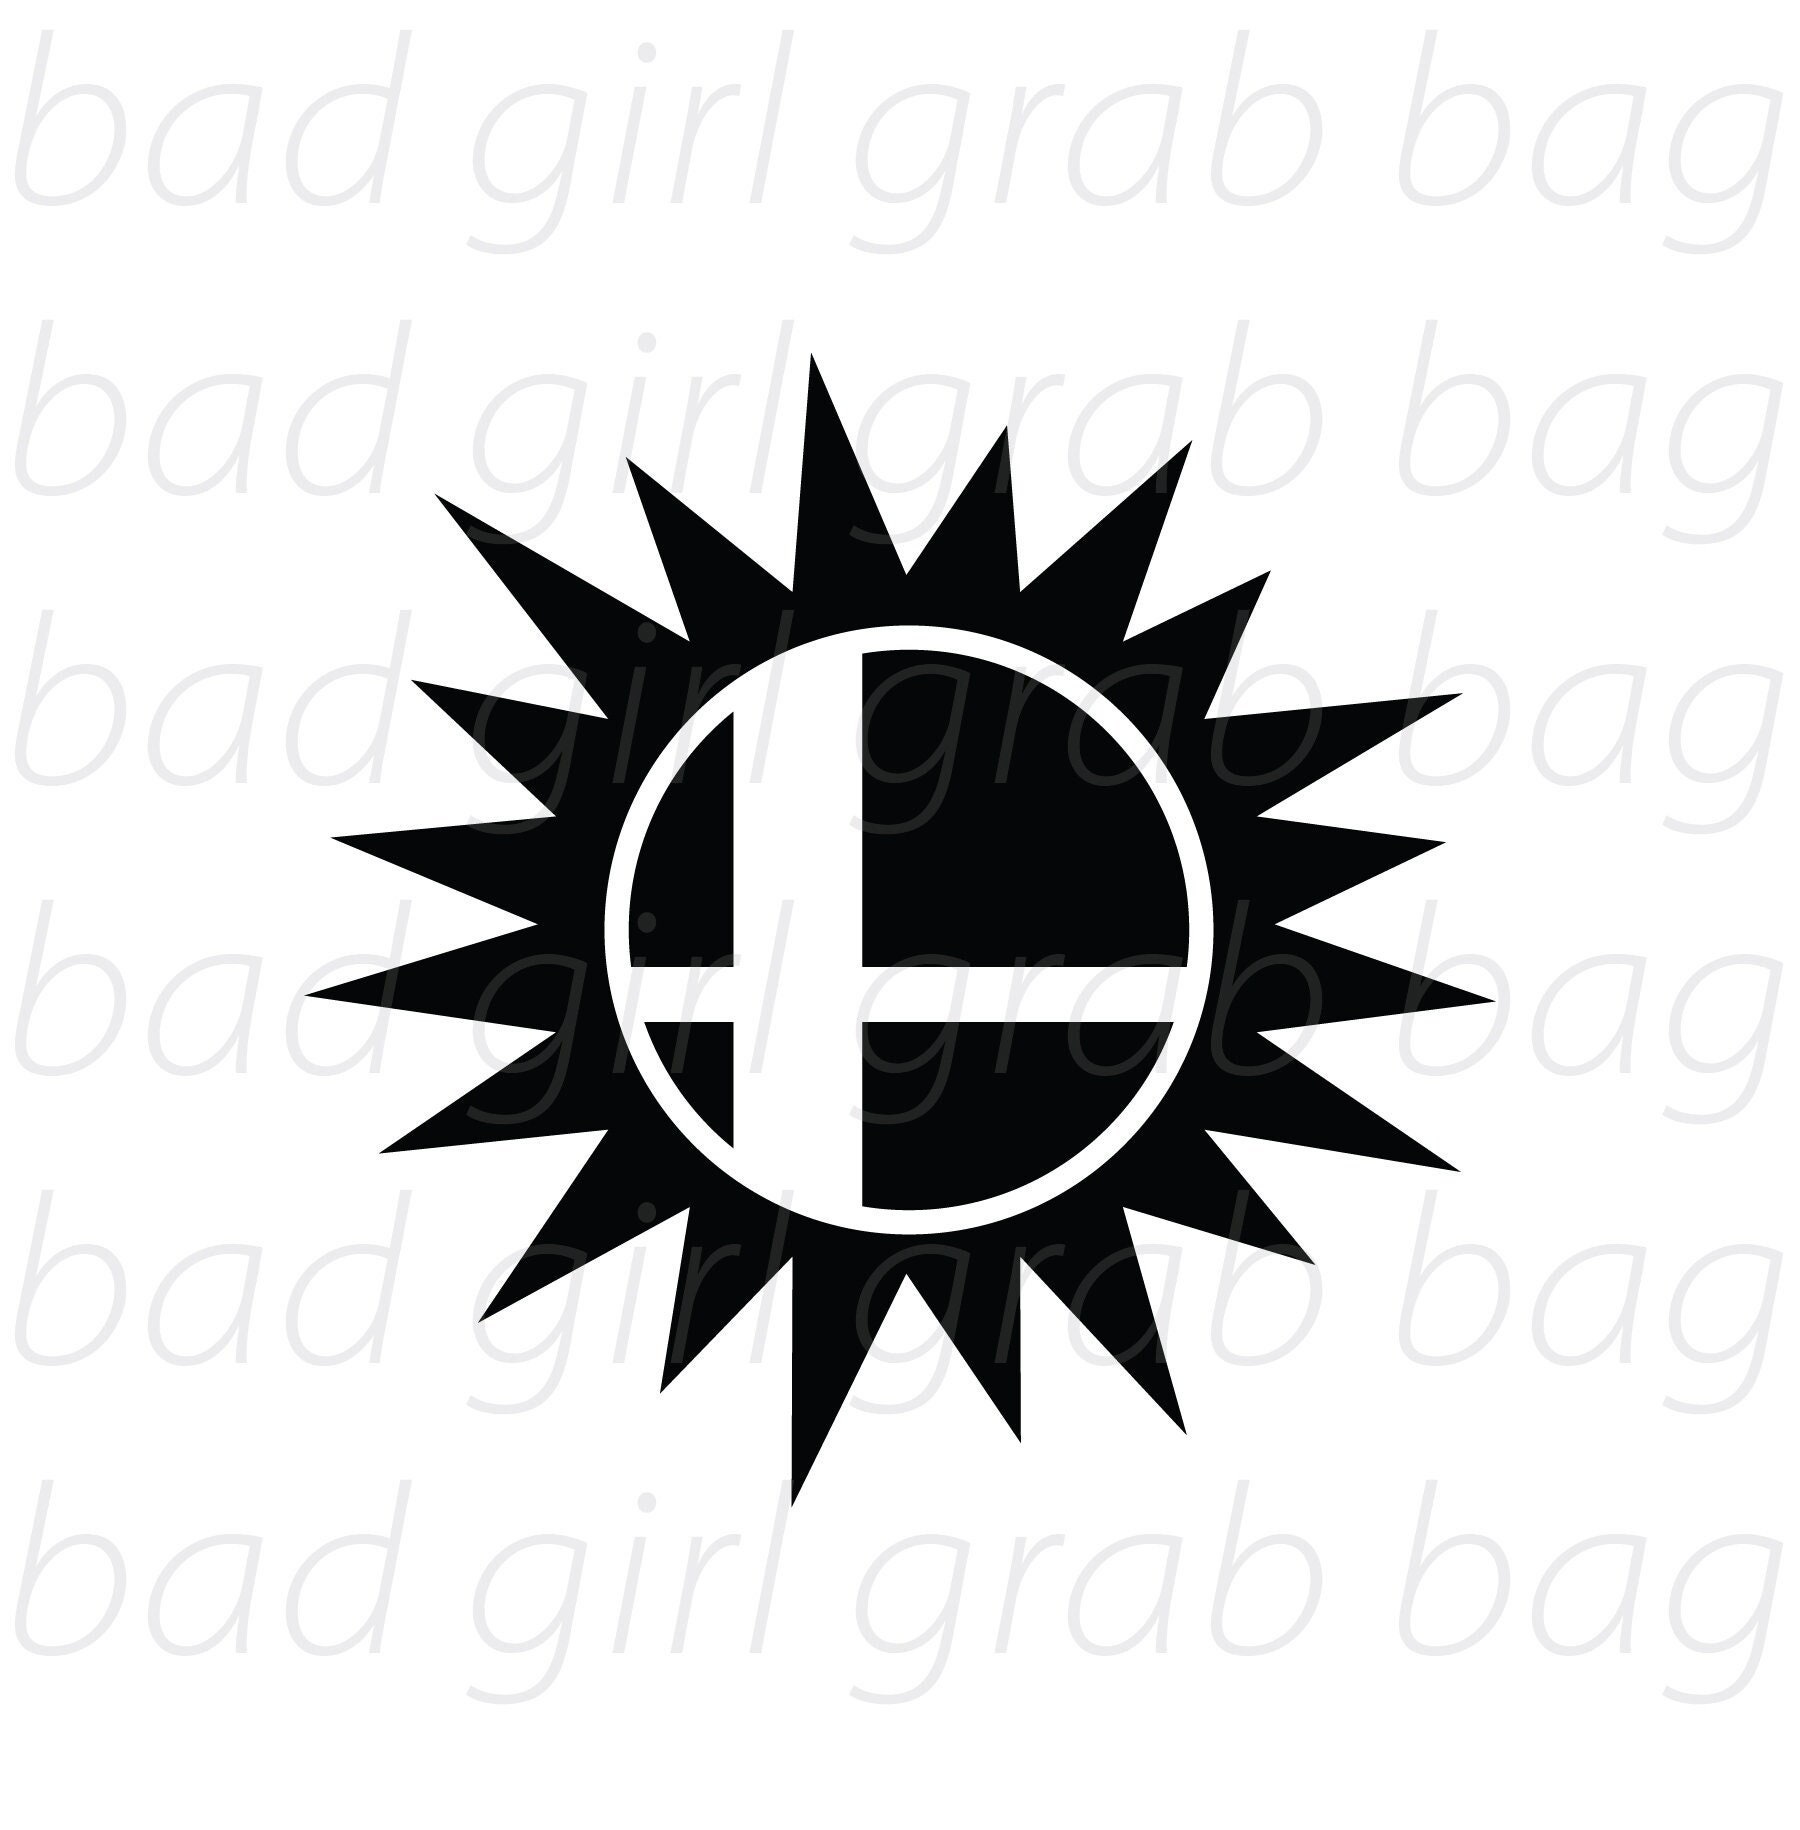 Smash Ball / Super Smash Bros Nintendo Inspired SVG File for Cricut,  Silhouette, Vinyl, HTV